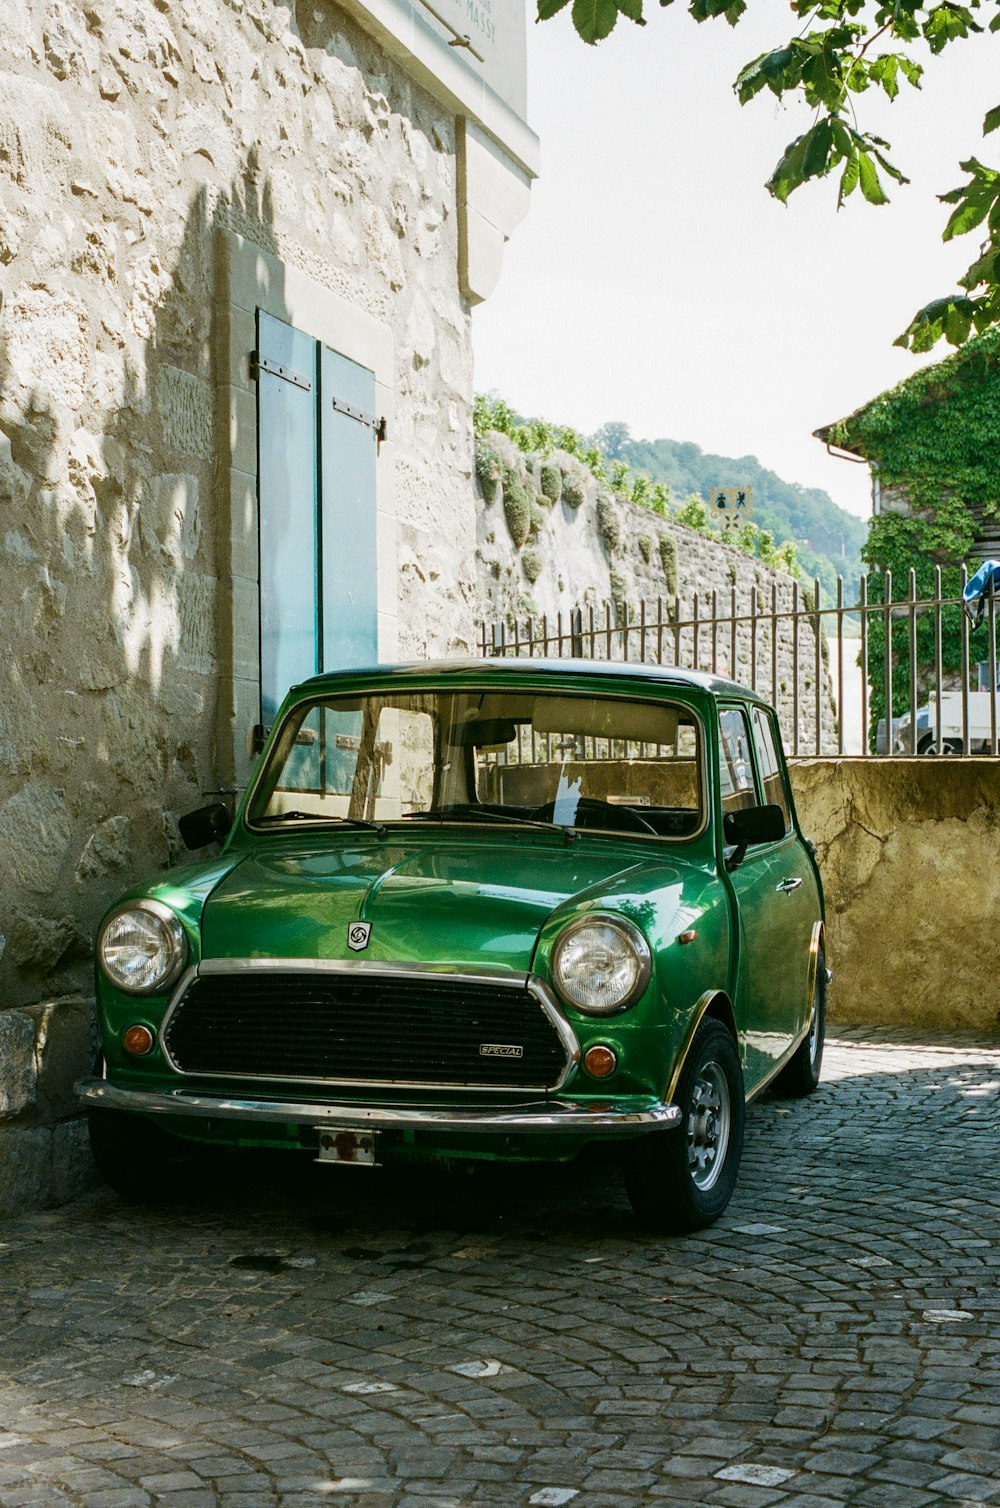 Une petite voiture verte garée dans une rue pavée